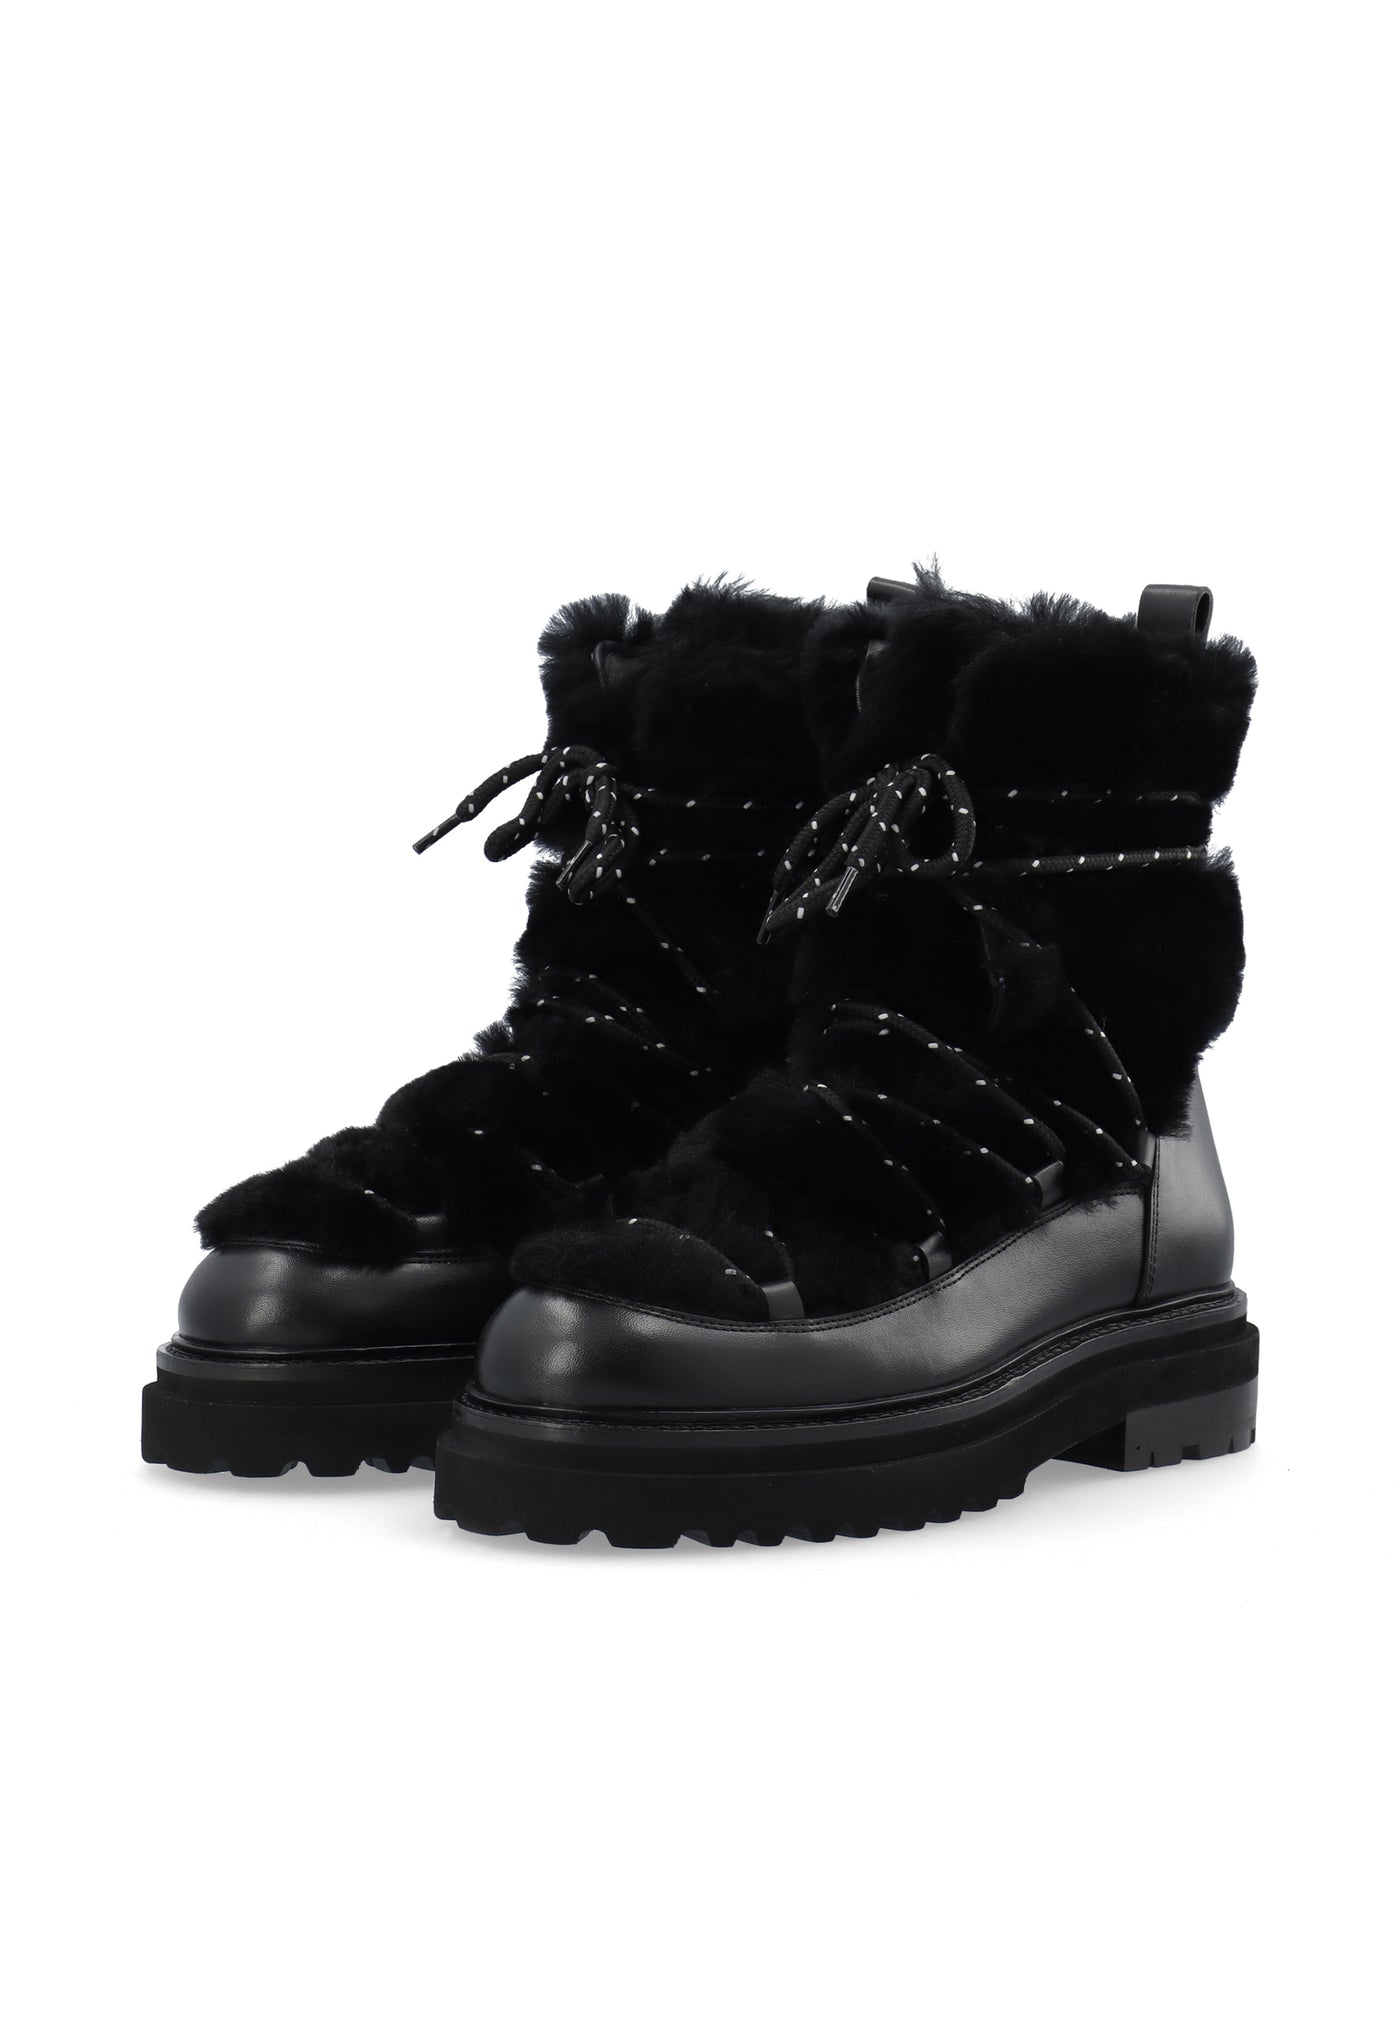 LÄST Sandra Snowboot - Leather/PES - Black Ankle Boots Black